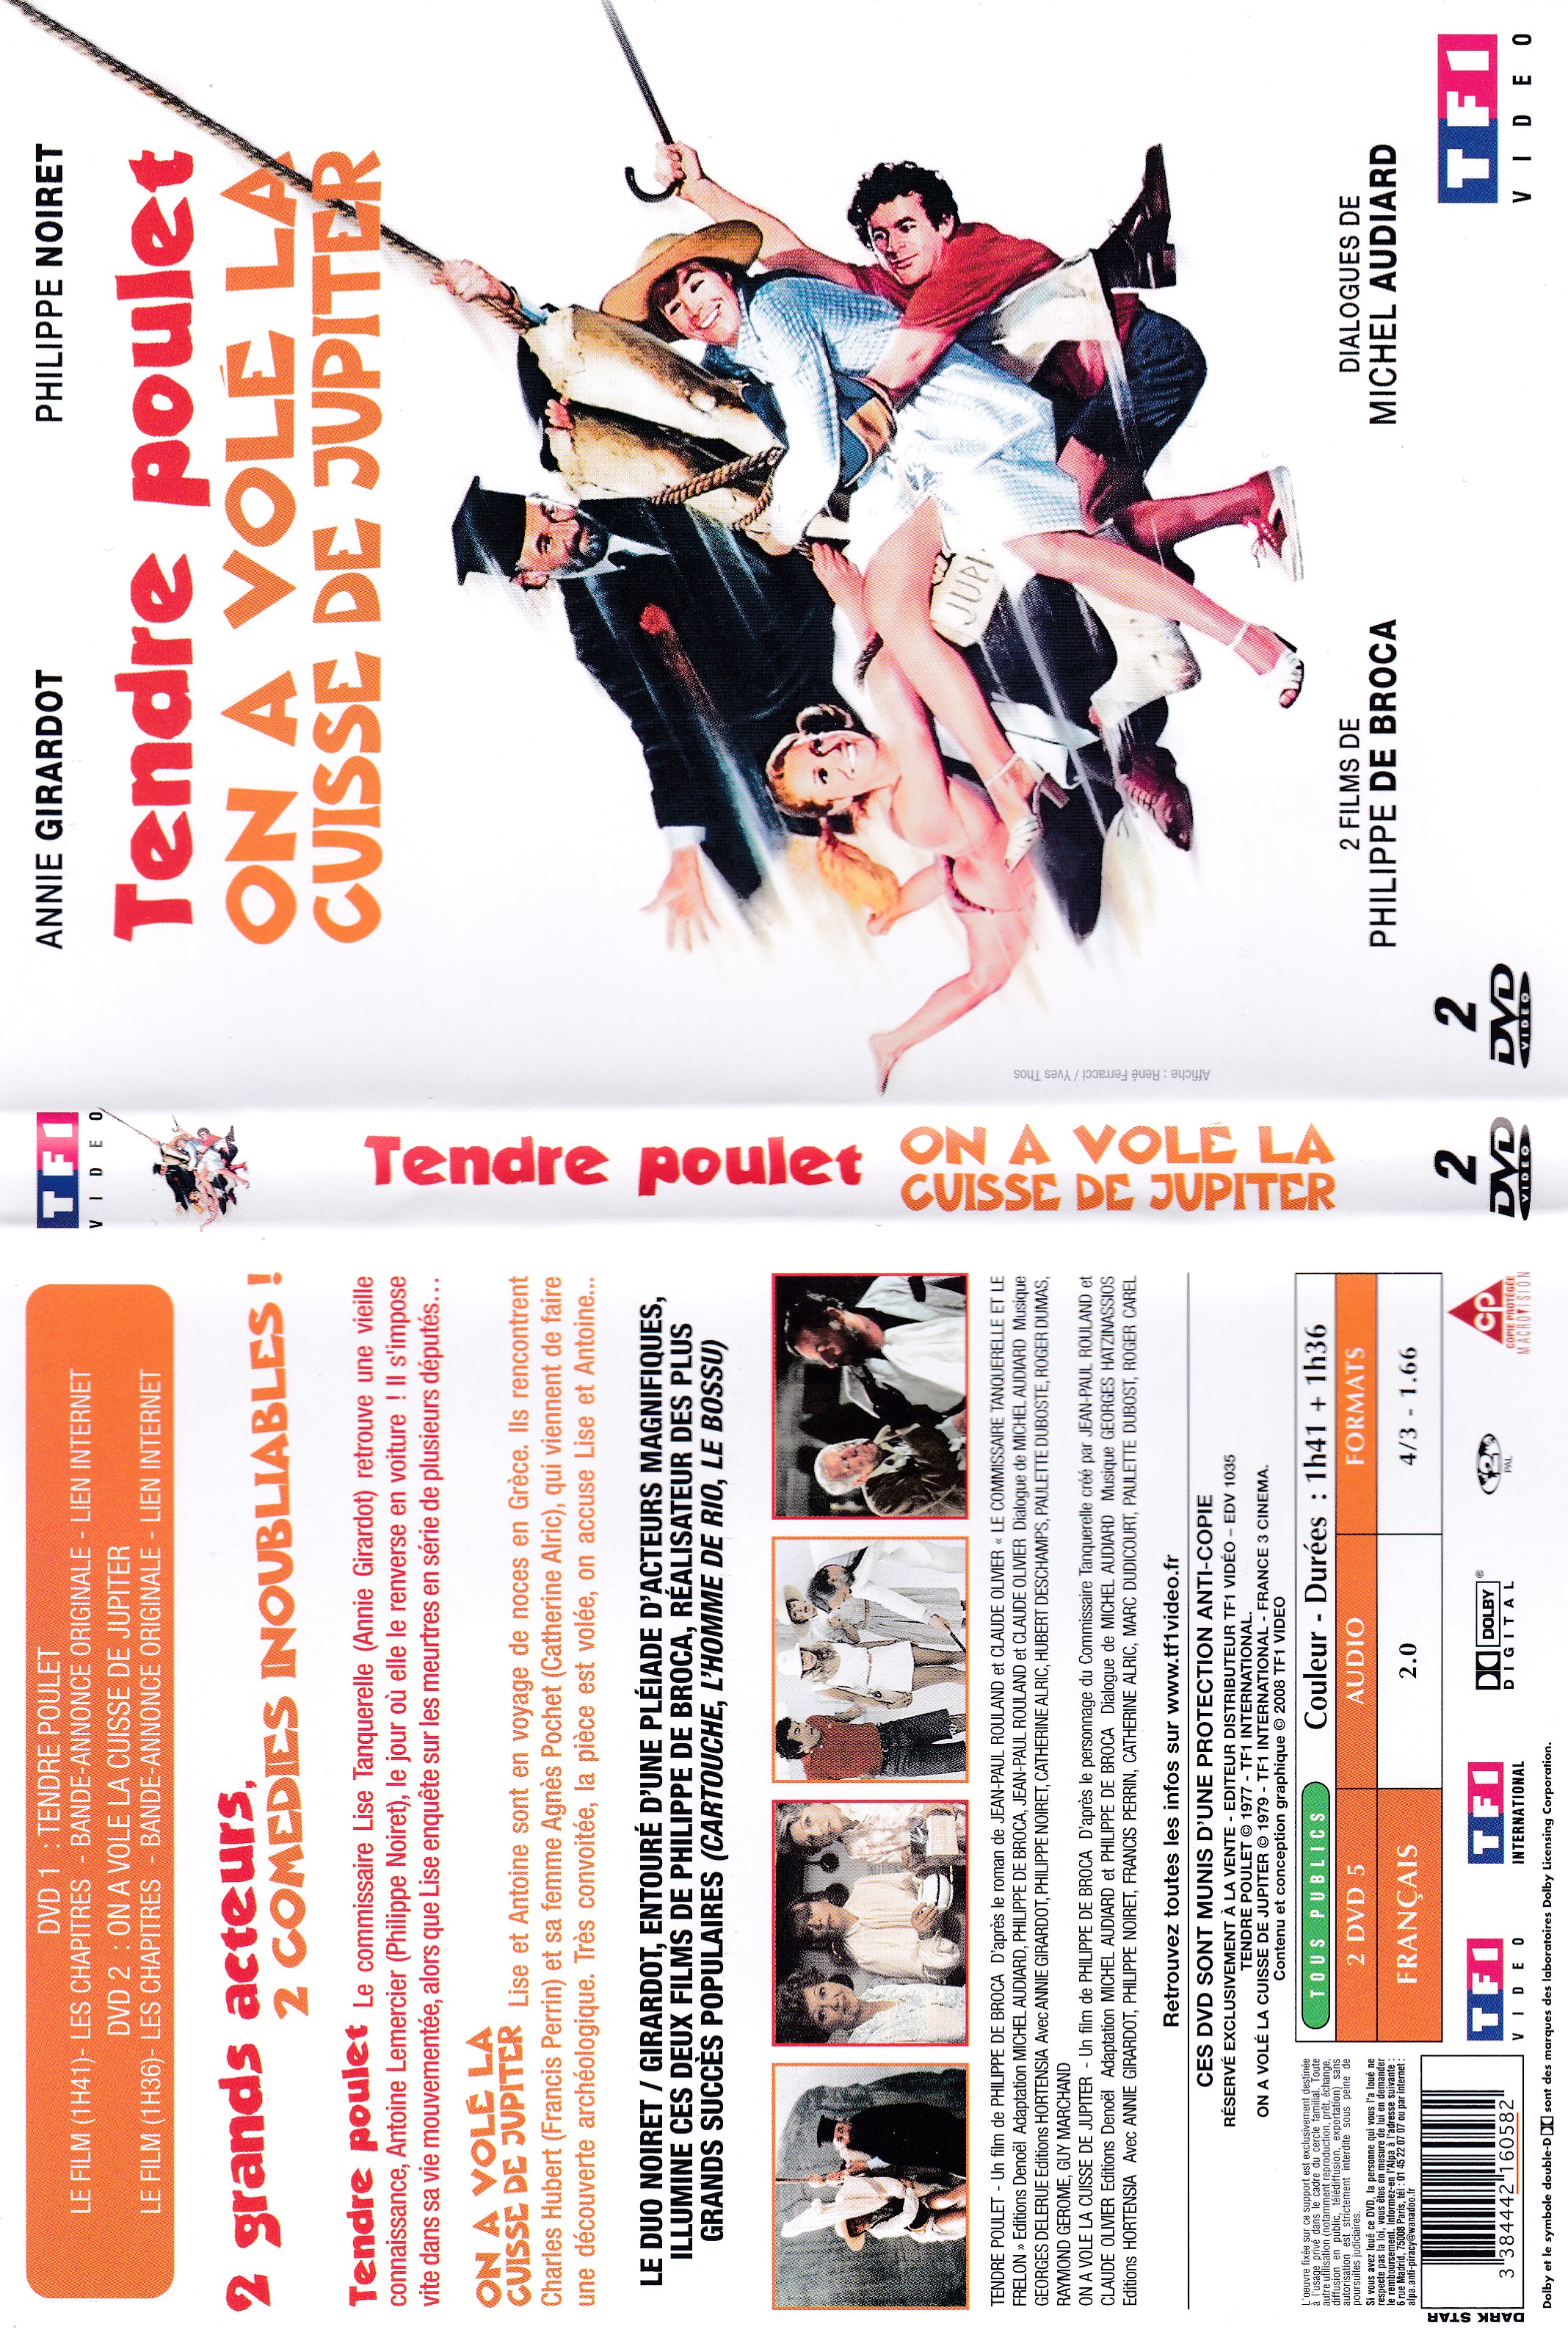 Jaquette DVD de Tendre poulet - On à voler la cuisse à Jupiter - Cinéma  Passion